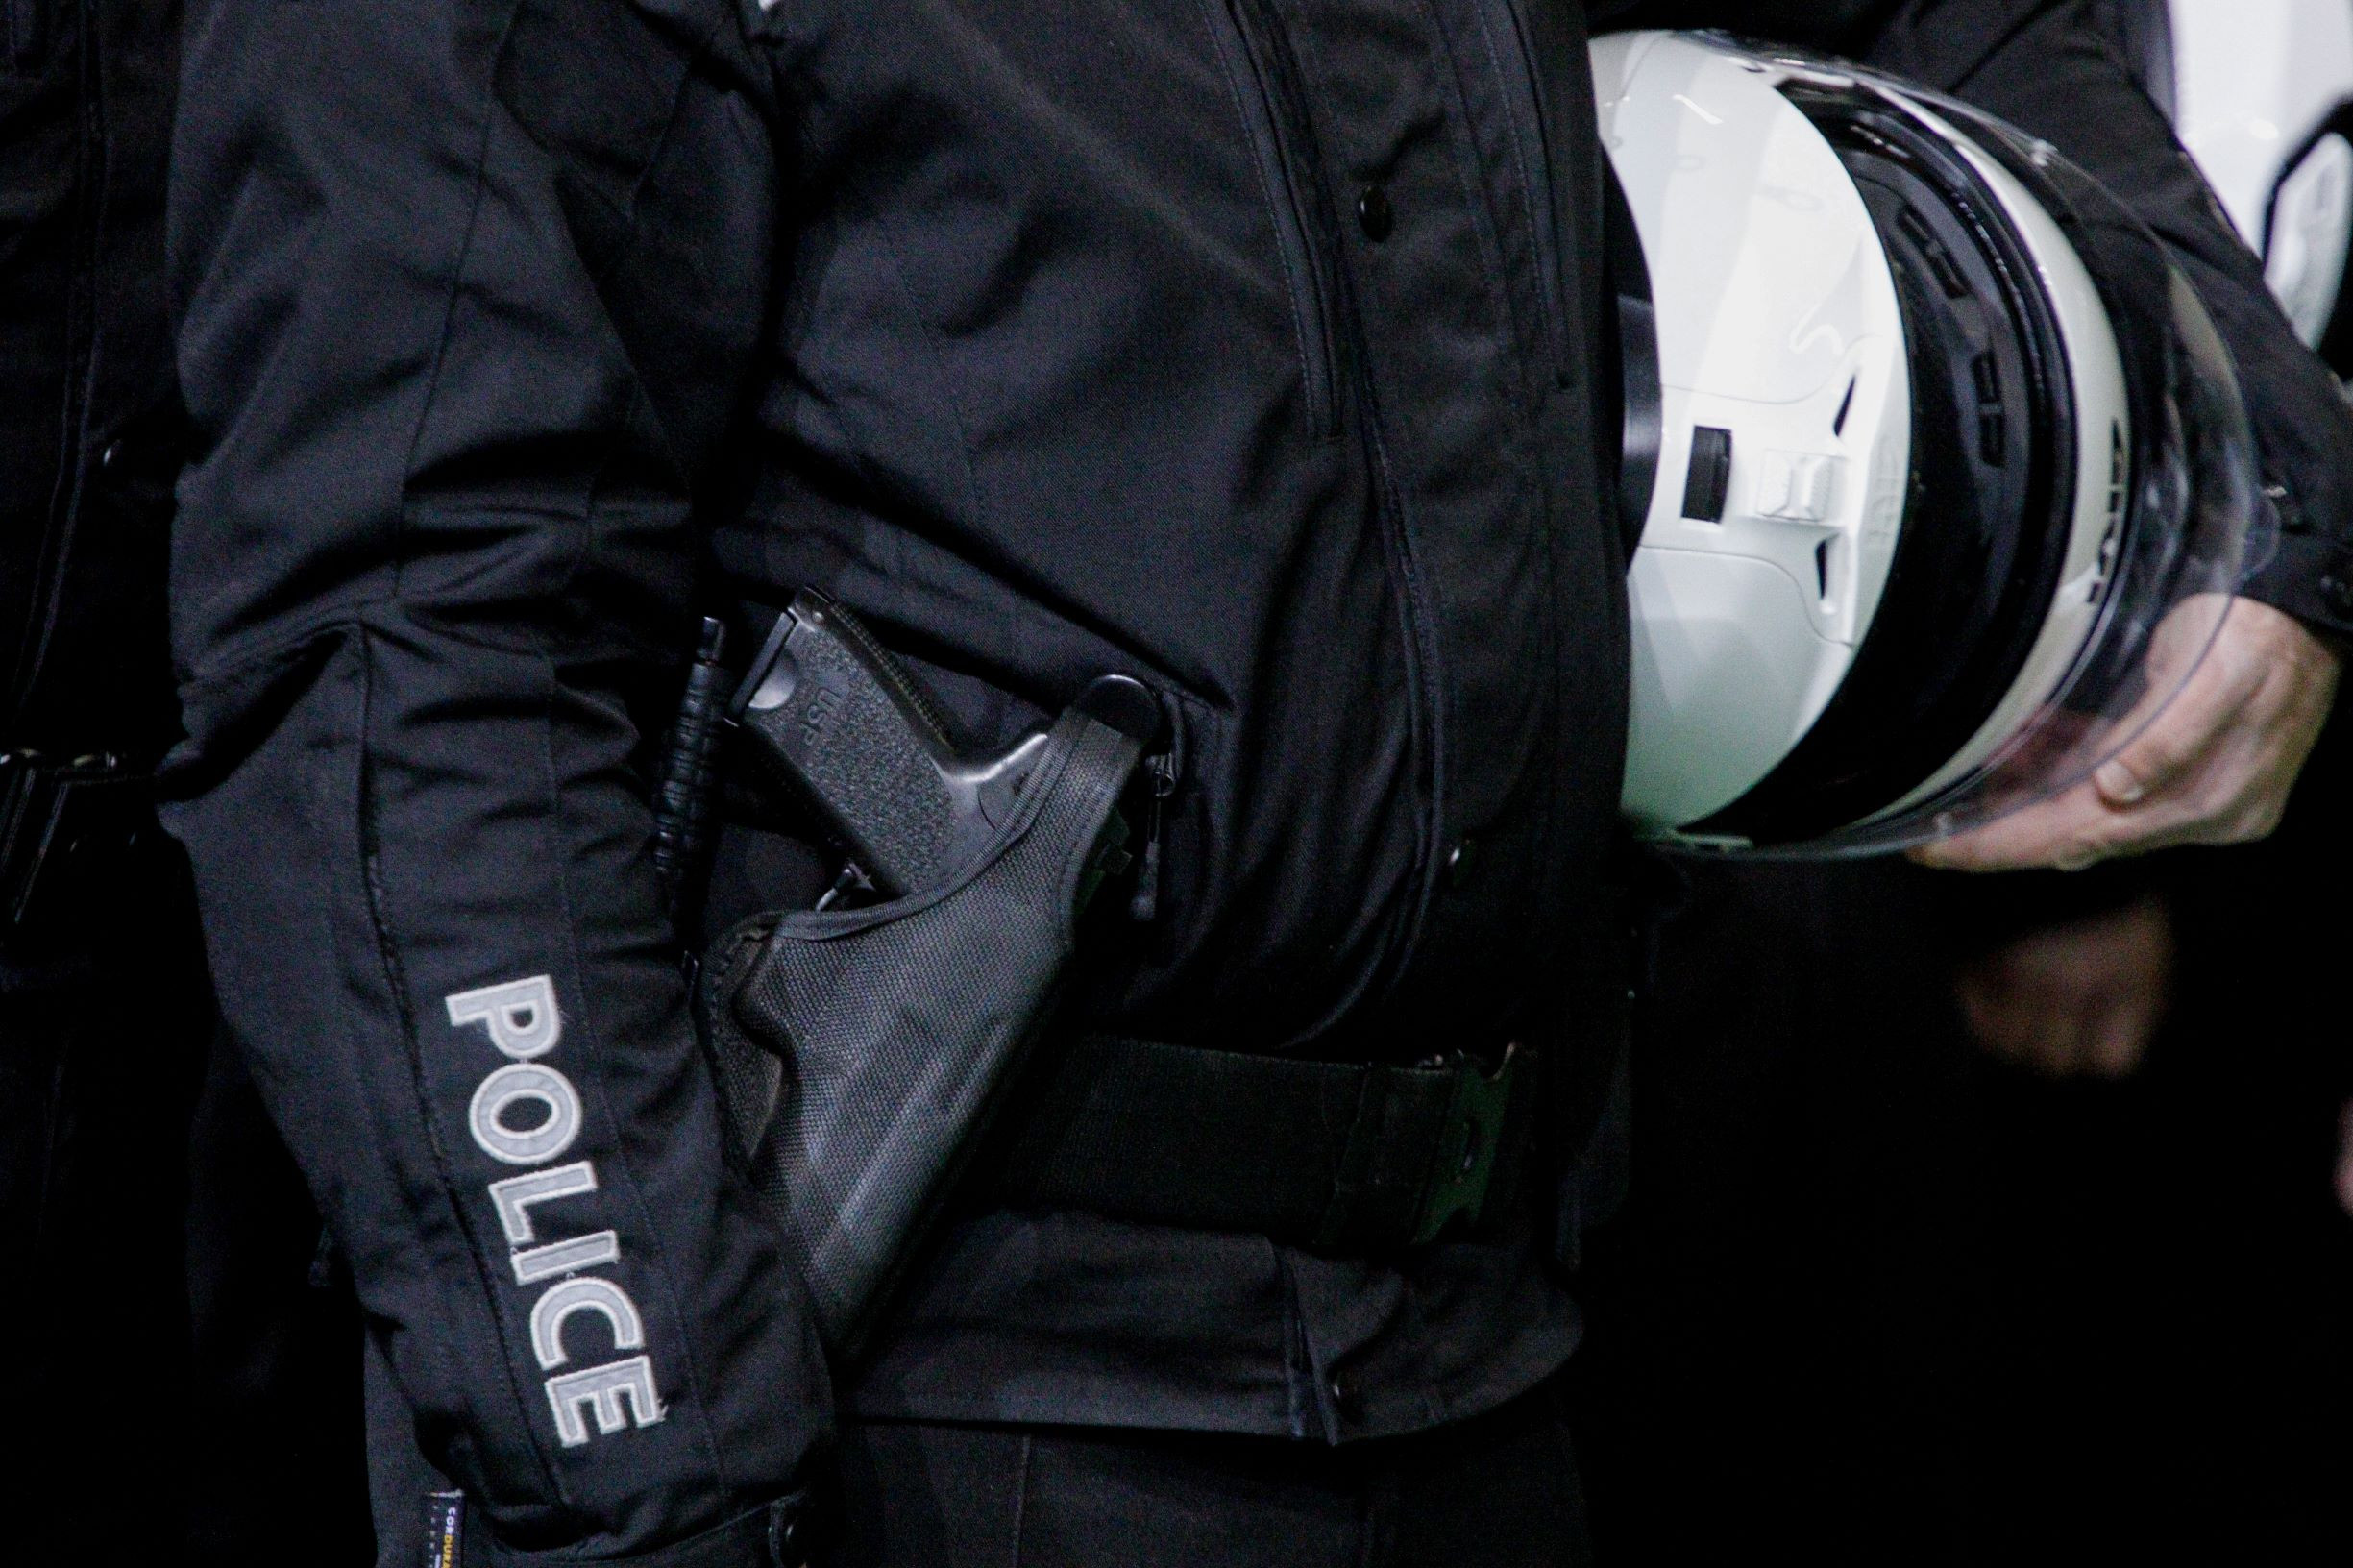 Πέραμα: Αστυνομικός σκότωσε κατά λάθος τον επίσης αστυνομικό αδελφό του